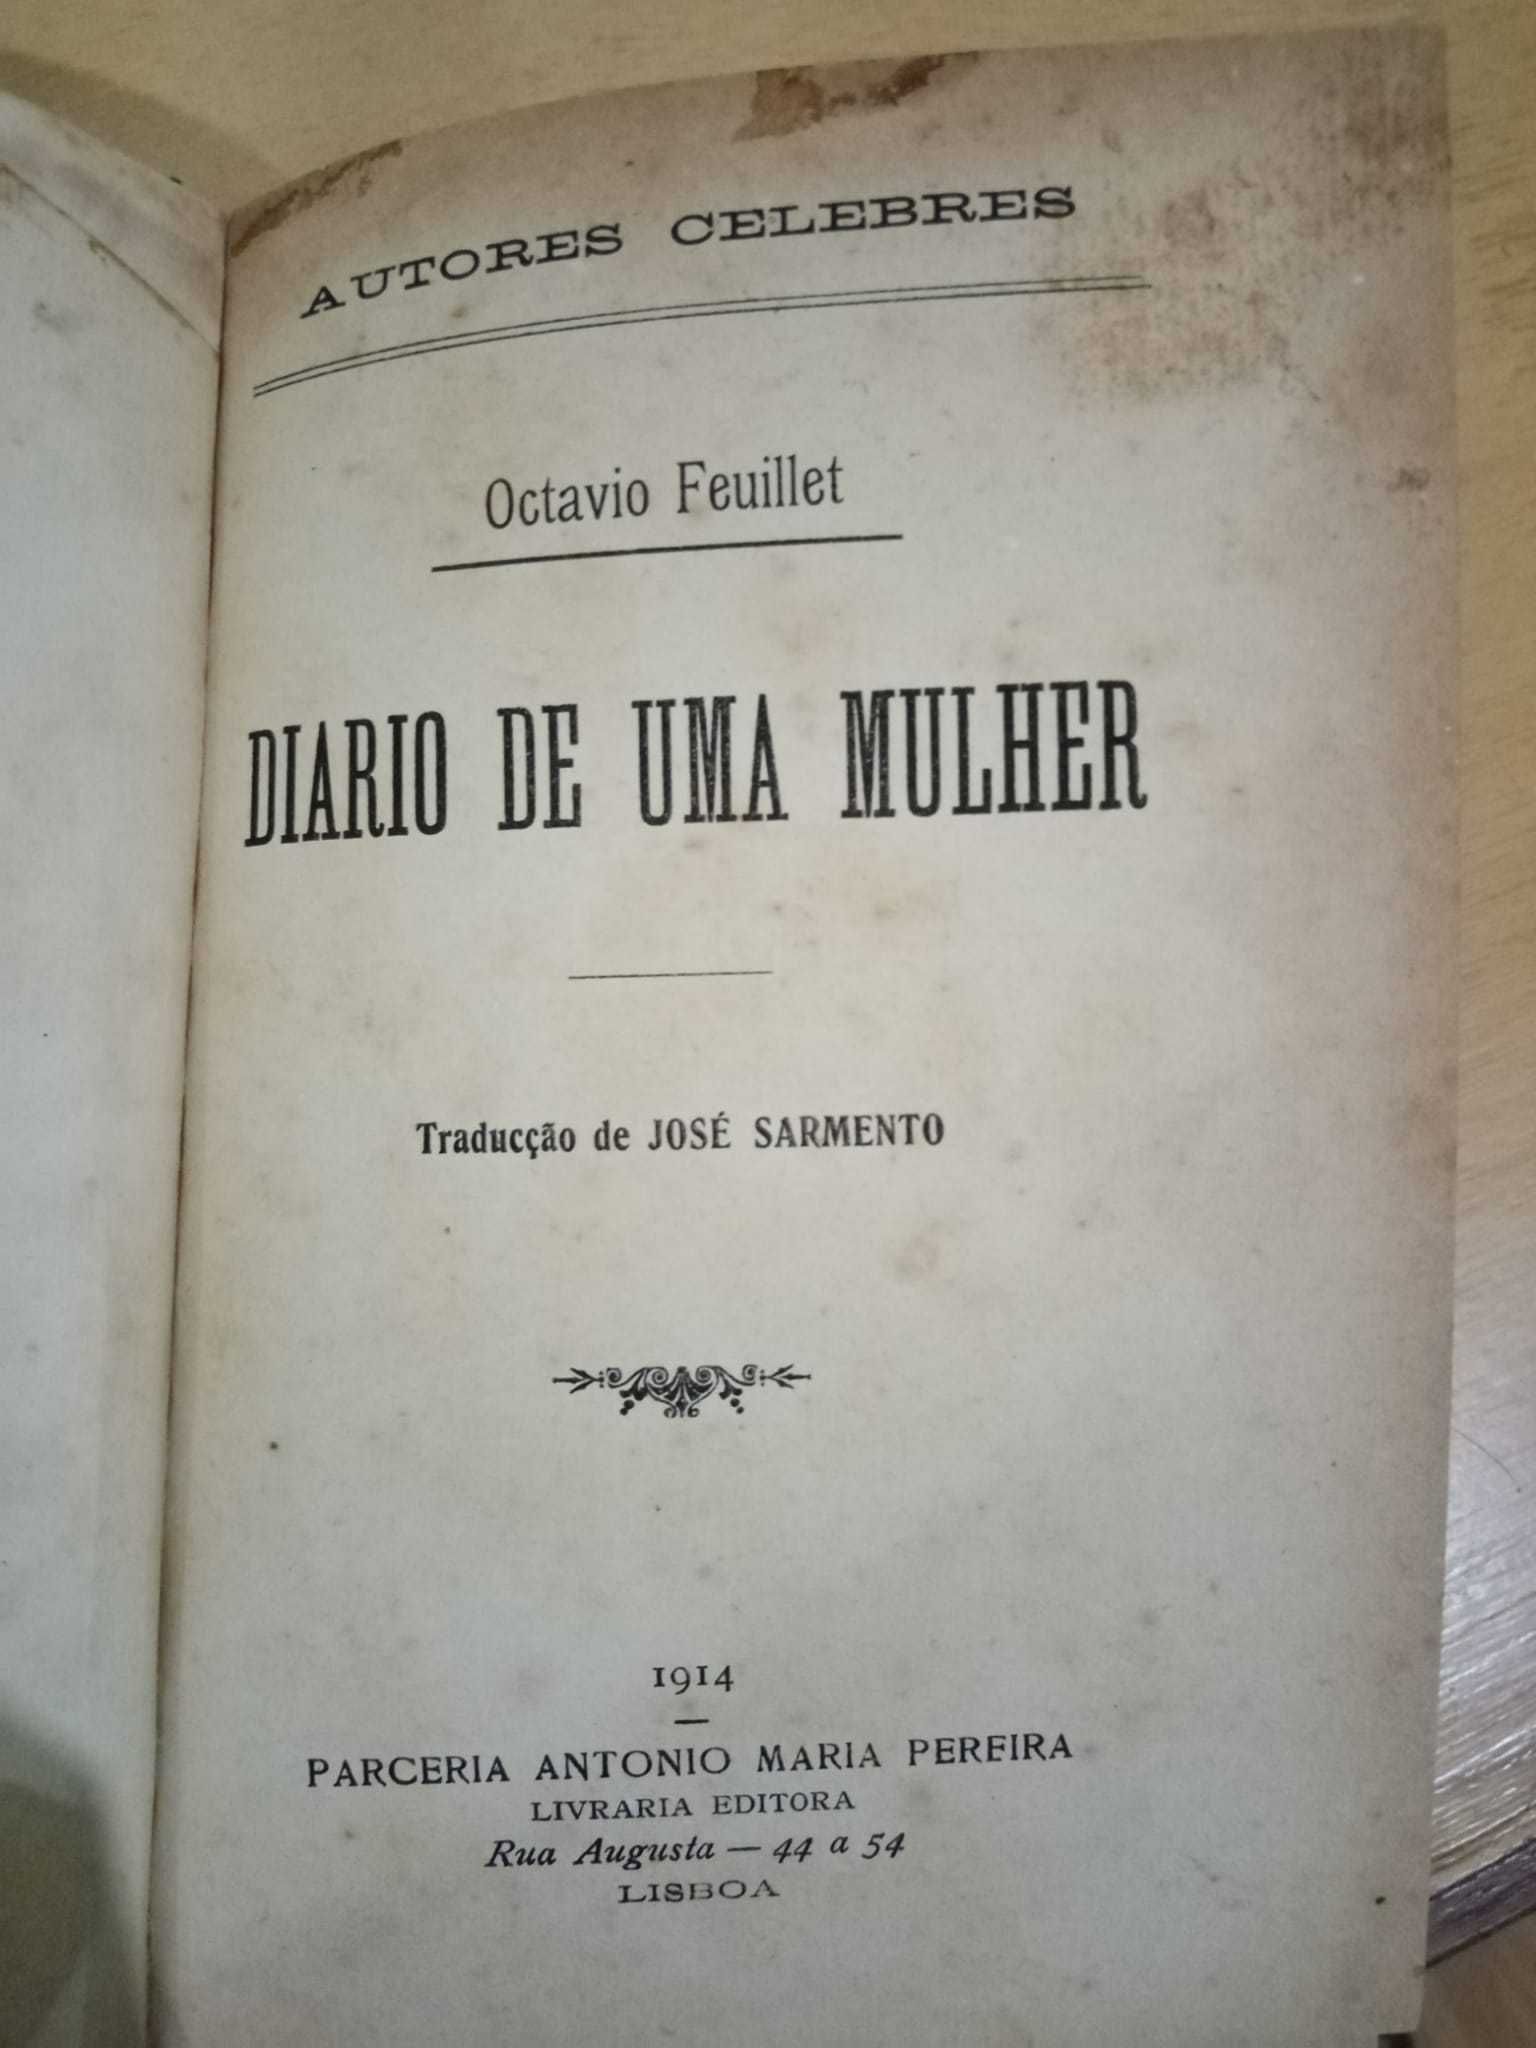 Diário de uma mulher, Octavio Feuillet (1914)